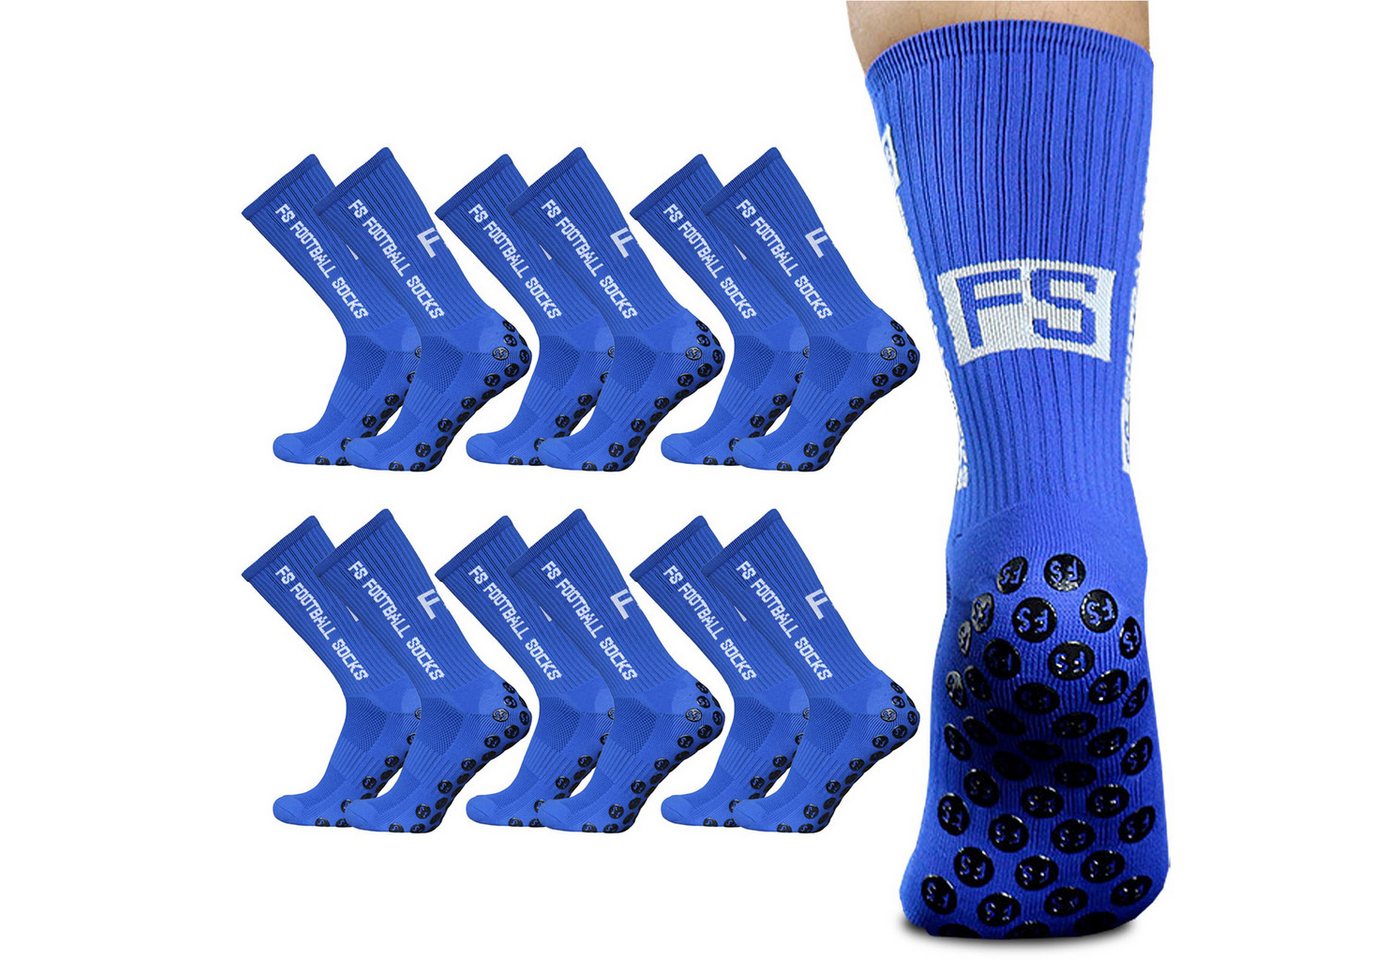 Cbei Sportsocken Fußball Socken,Fußballsocken Anti Rutsch Grip atmungsaktiv (6 Paar Socken Blau atmungsaktiv,nicht linke, elastische,hohe Qualität, 6-Paar, 6 Paar Socken Blau atmungsaktiv,nicht linke, elastische,hohe Qualität) Atmungsaktiv,Anti-Rutsch,Elastisch,hochwertig, langlebig atmungsaktiv von Cbei